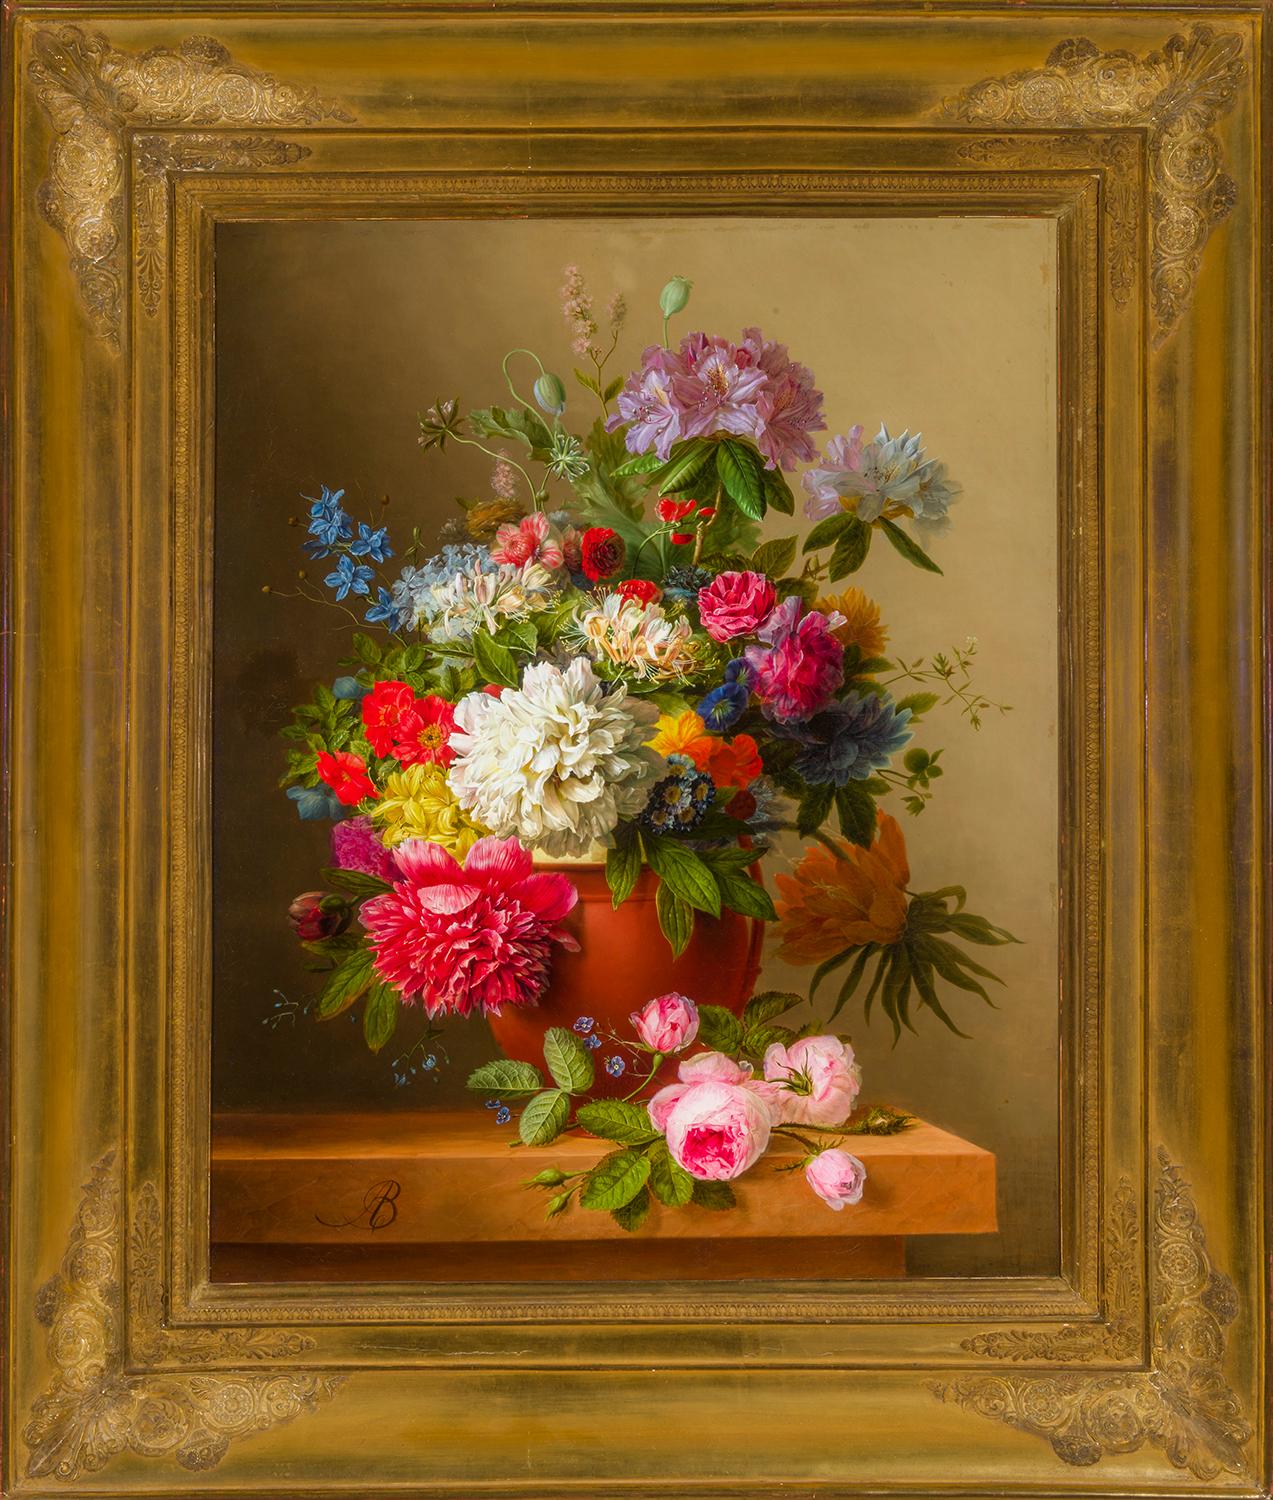 Arnoldus Bloemers  Still-Life Painting – Stillleben mit Pfingstrosen, Rosen, Honigbeeren, Pflanzgefäßen und anderen Blumen